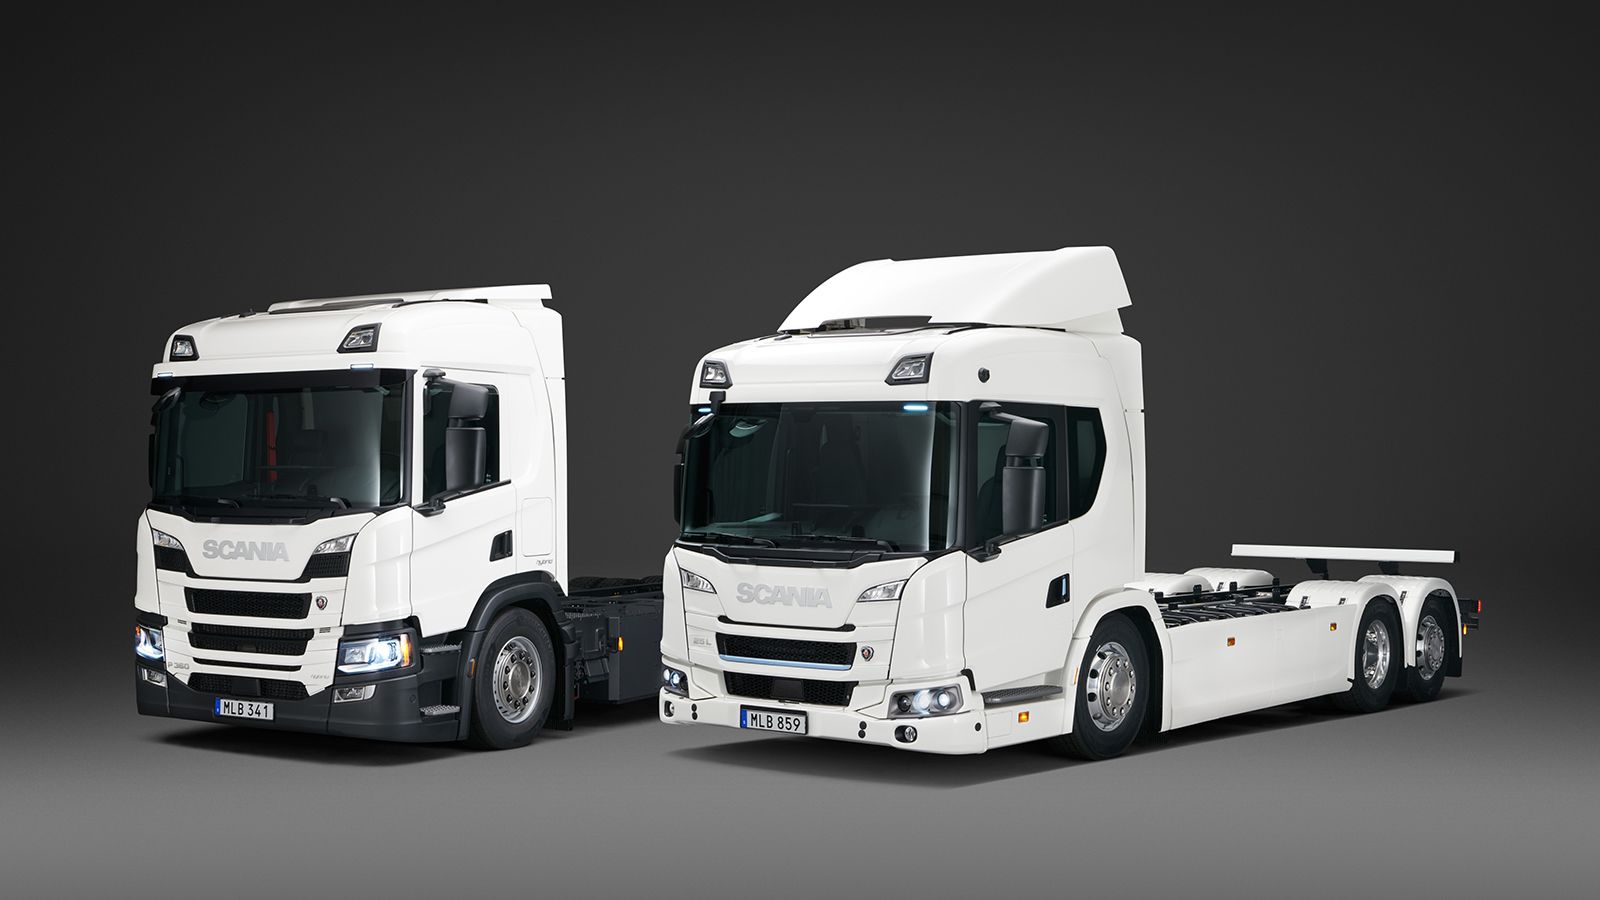 Η σημερινή ηλεκτρική γκάμα της Scania, περιλαμβάνει ένα plug-in hybrid (αριστερά) και ένα πλήρως ηλεκτρικό φορτηγό (δεξιά) αυτονομίας 250 χλμ.